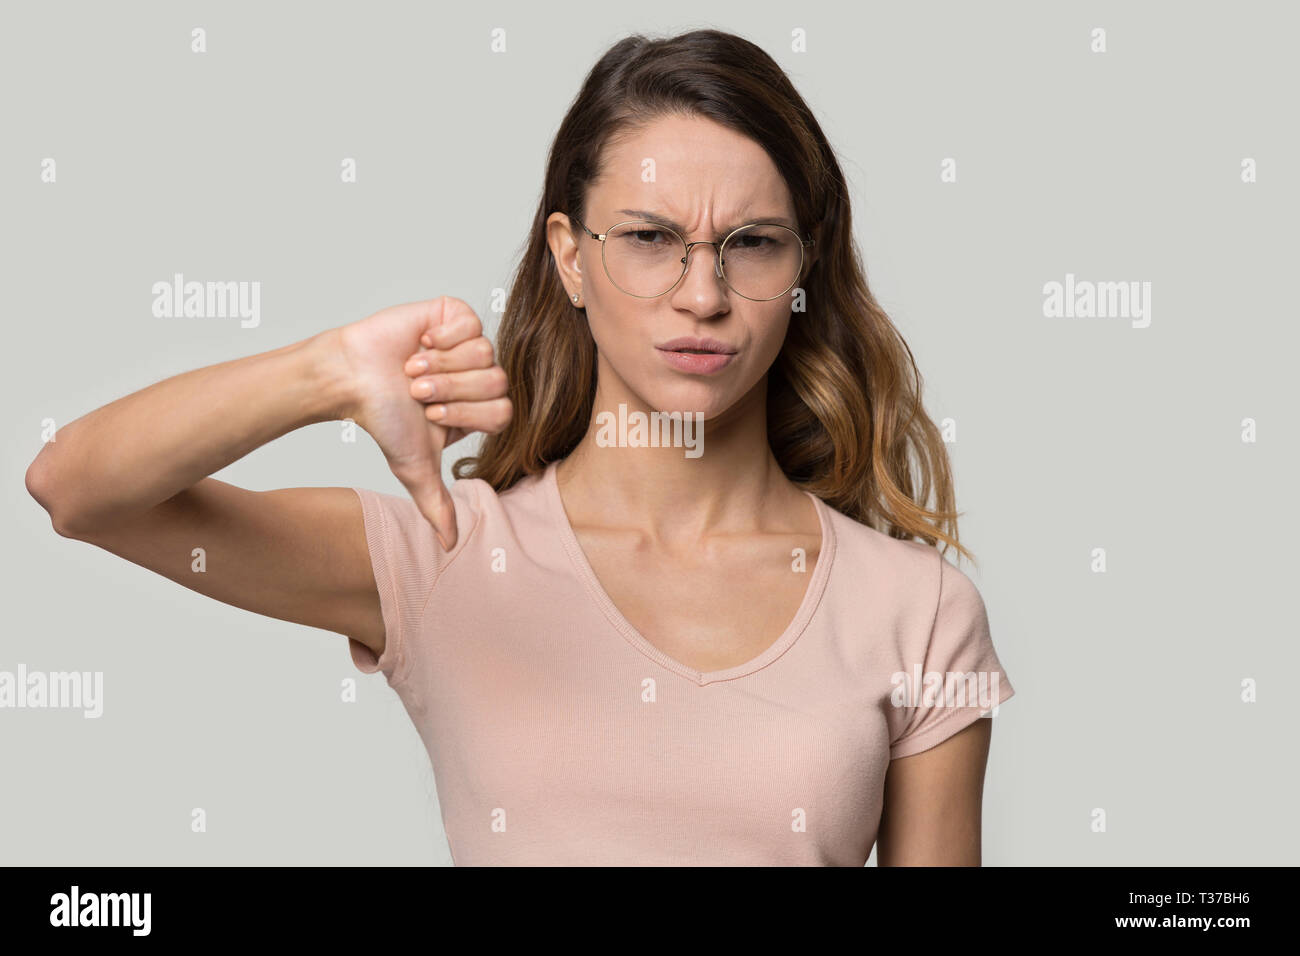 Insoddisfatto della donna che mostra il pollice verso il basso disapprovazione gesto studio shot Foto Stock